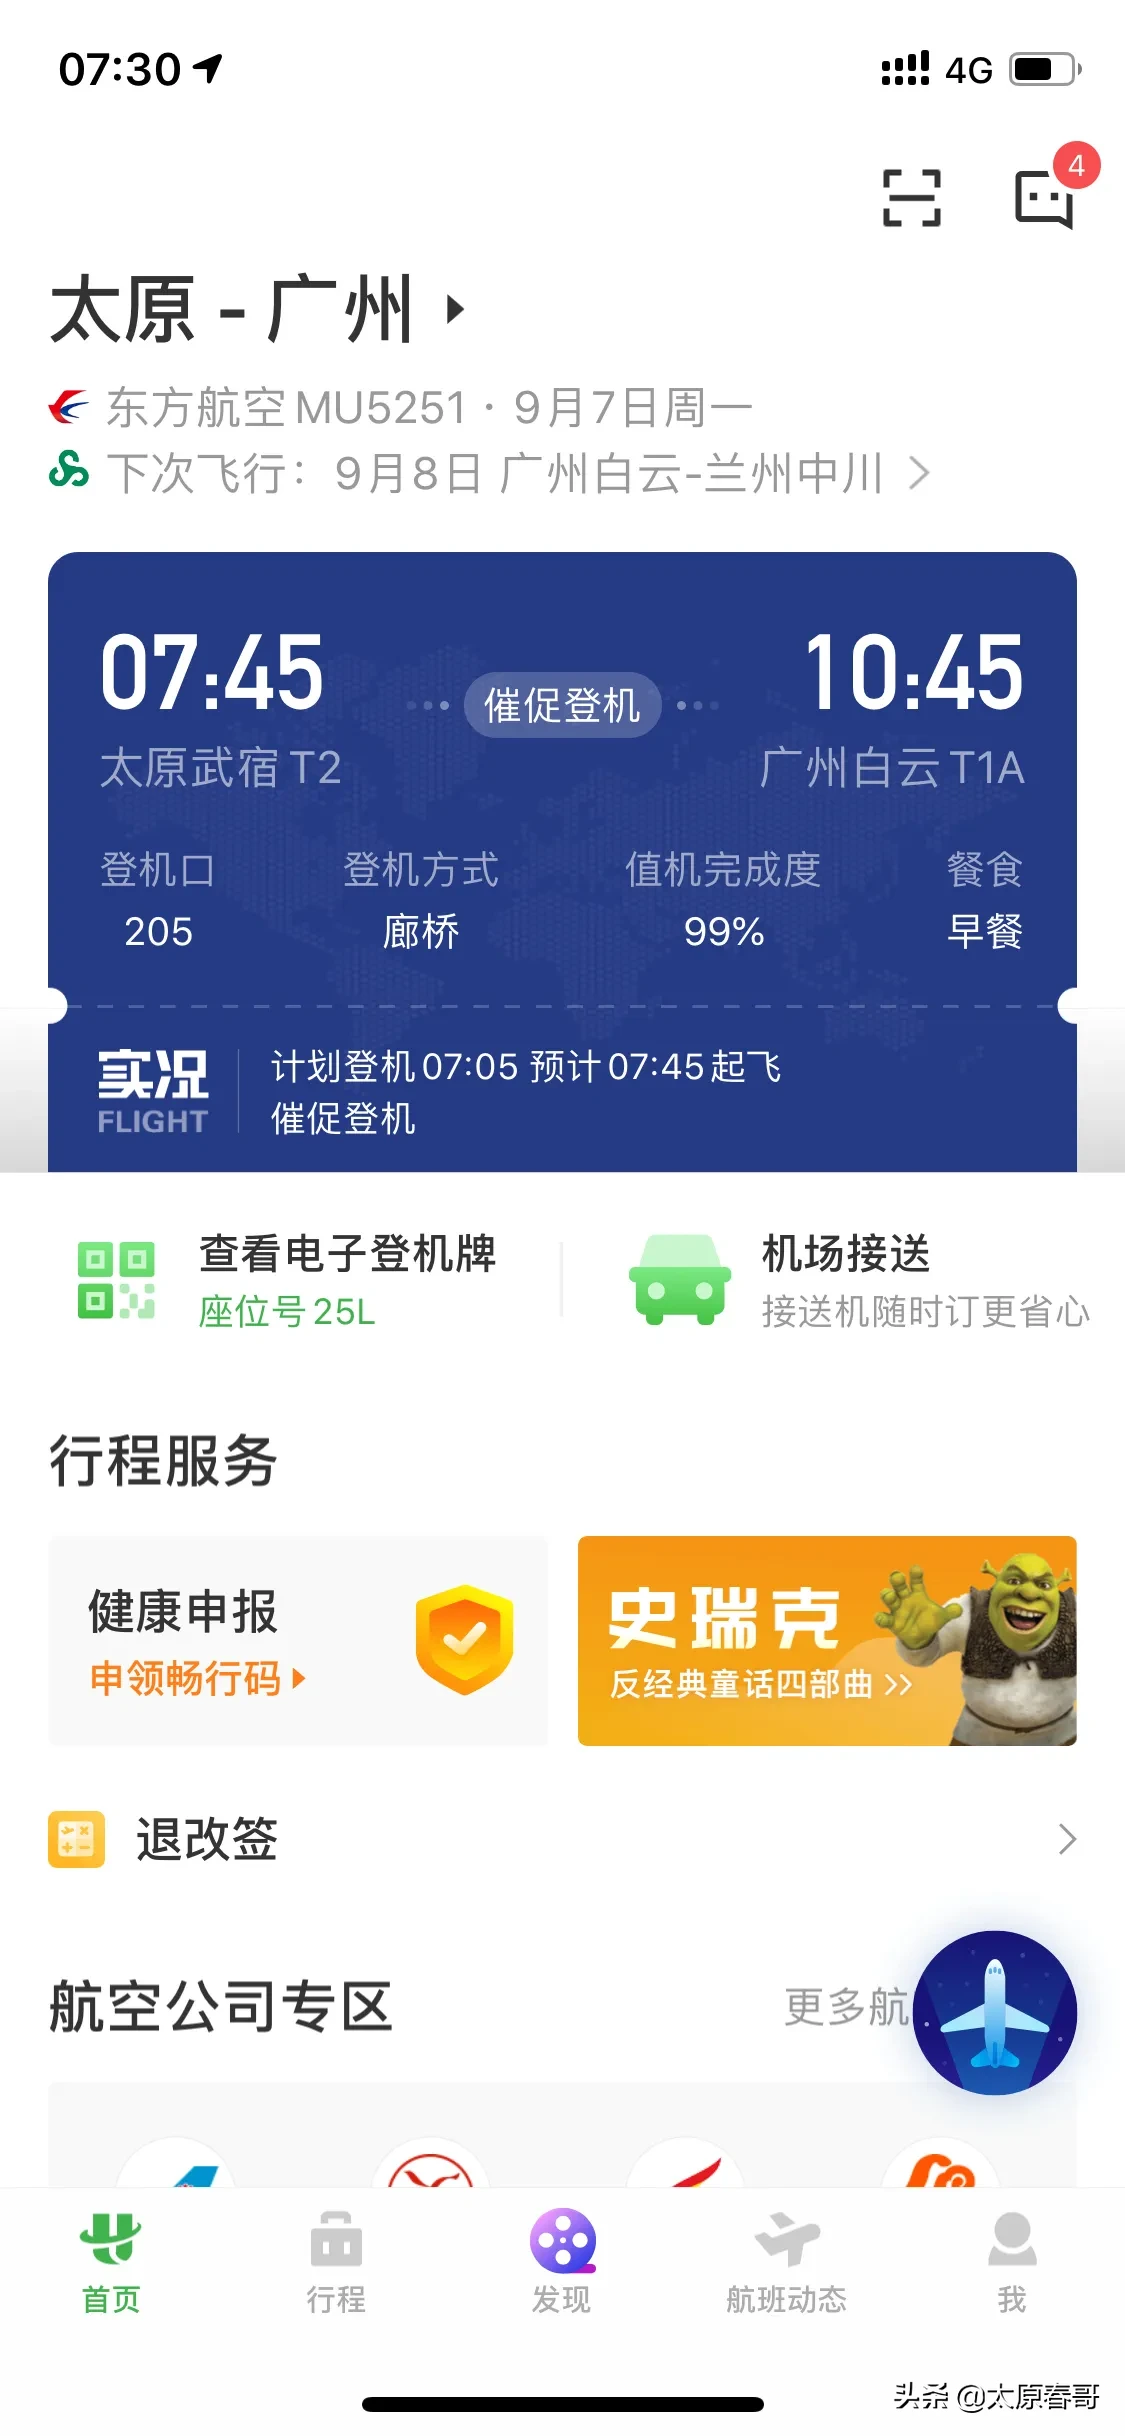 关于飞机聊天app下载中文版的信息